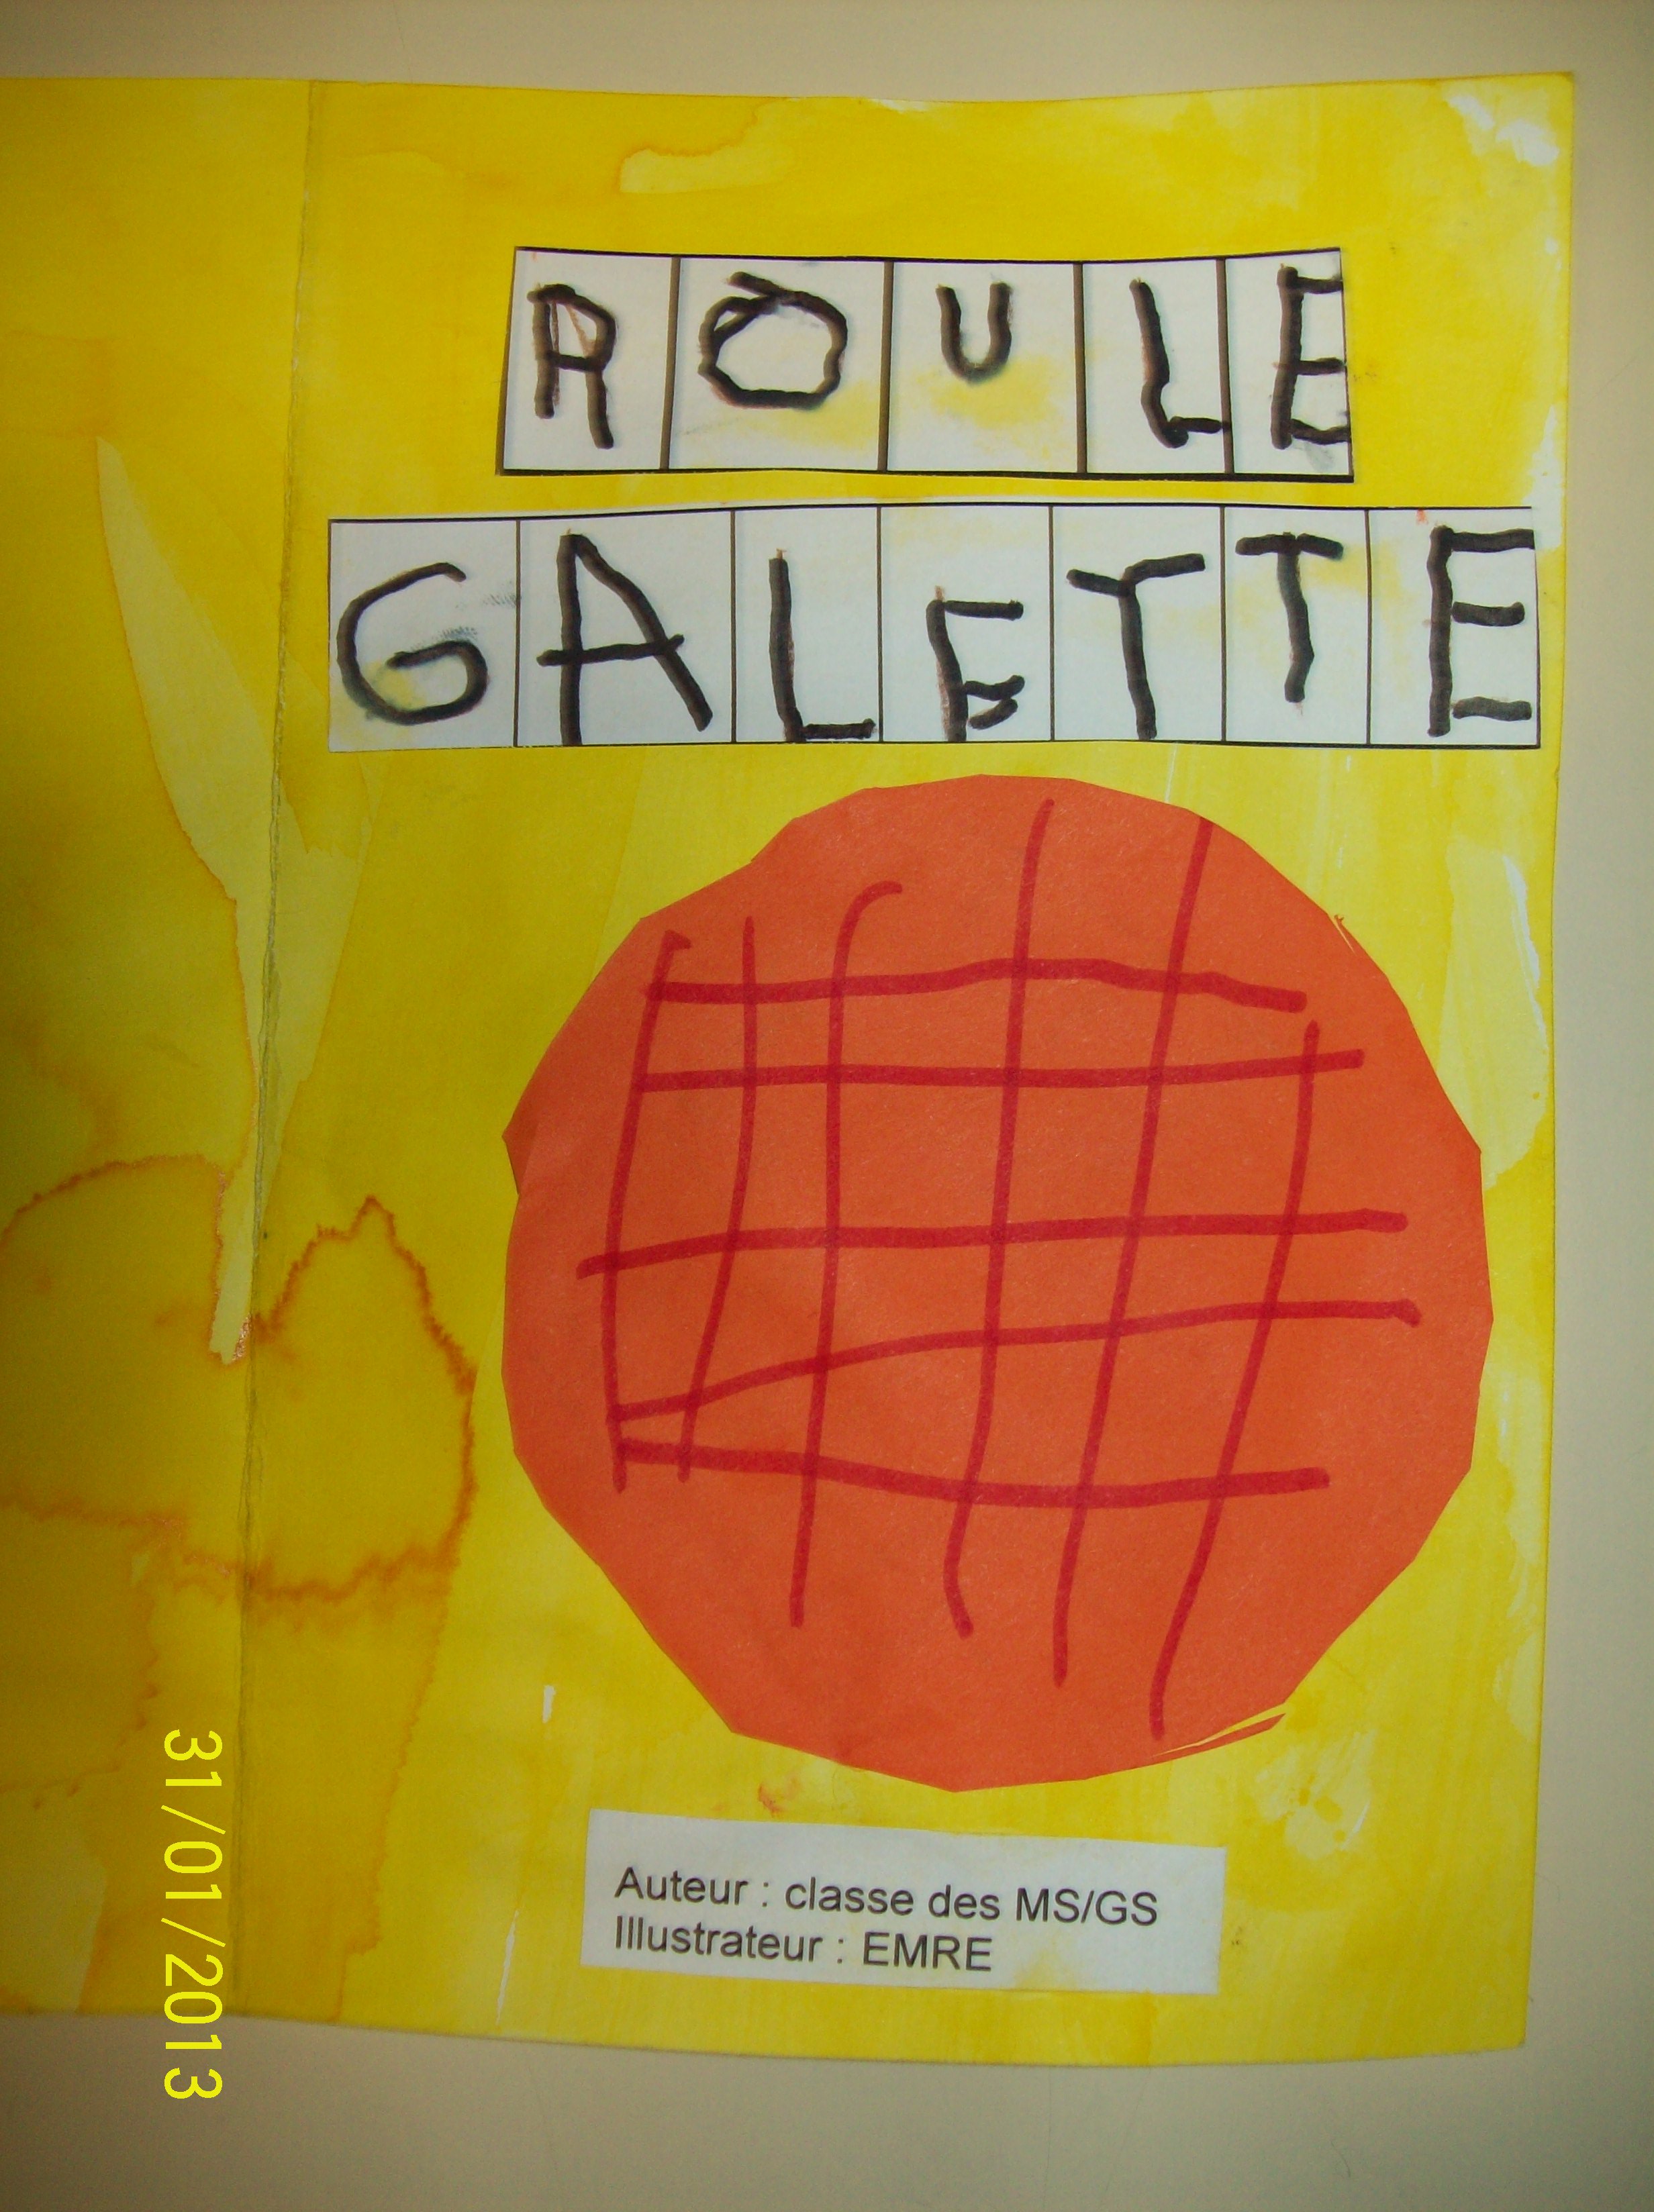 Creation d'un livre individuel sur Roule Galette MS/GS - La classe de WJL